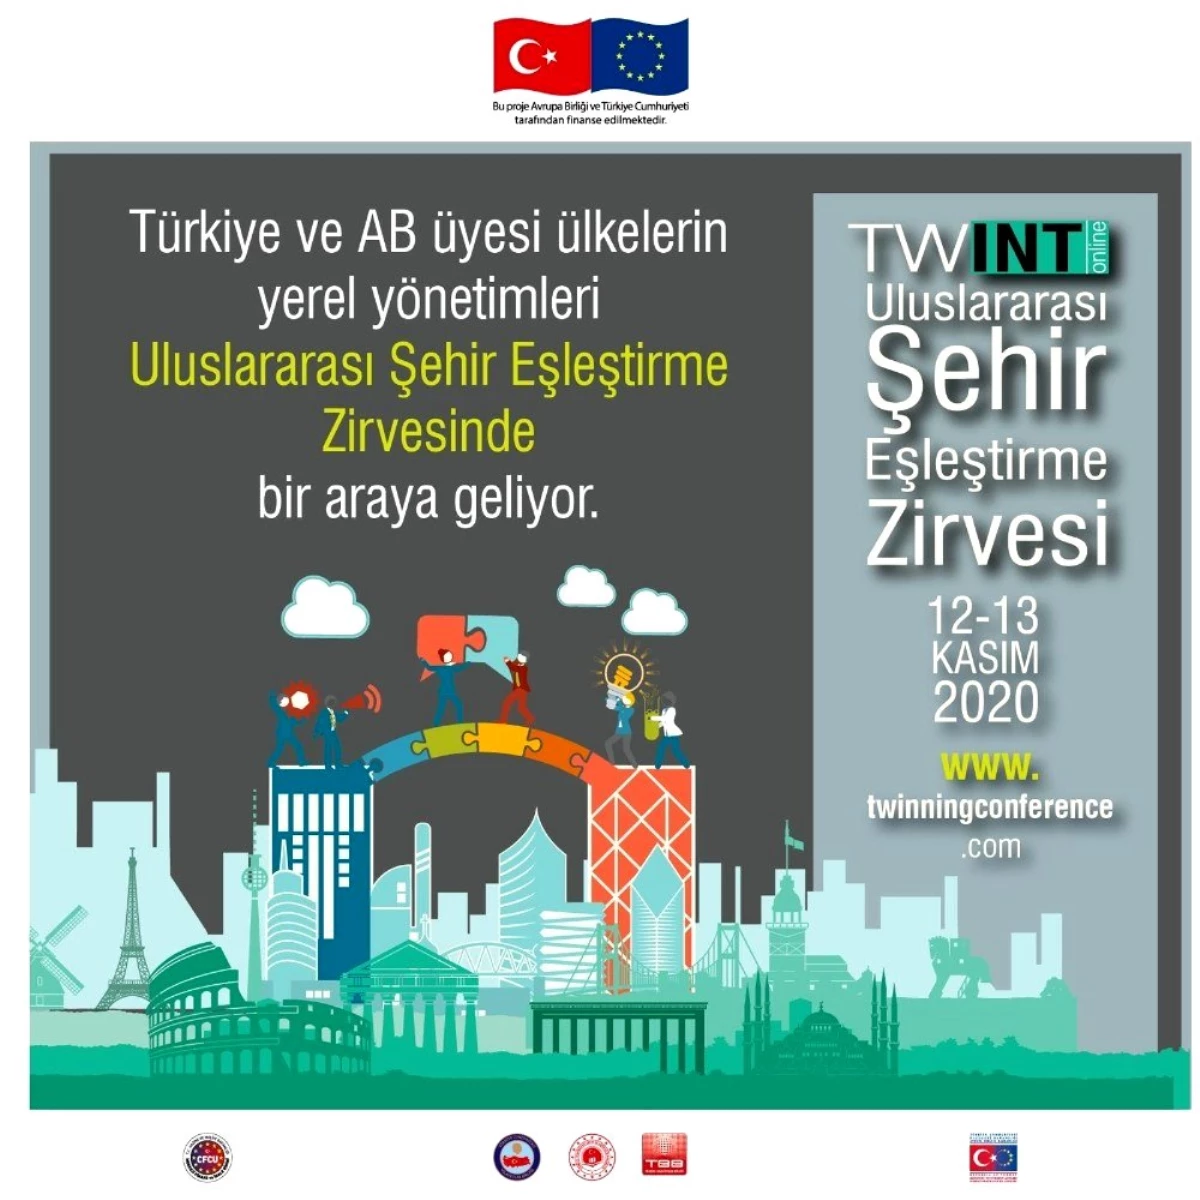 Türkiye ve AB\'den yerel yönetimler, \'Uluslararası Şehir Eşleştirme Zirvesi\'nde buluşacak